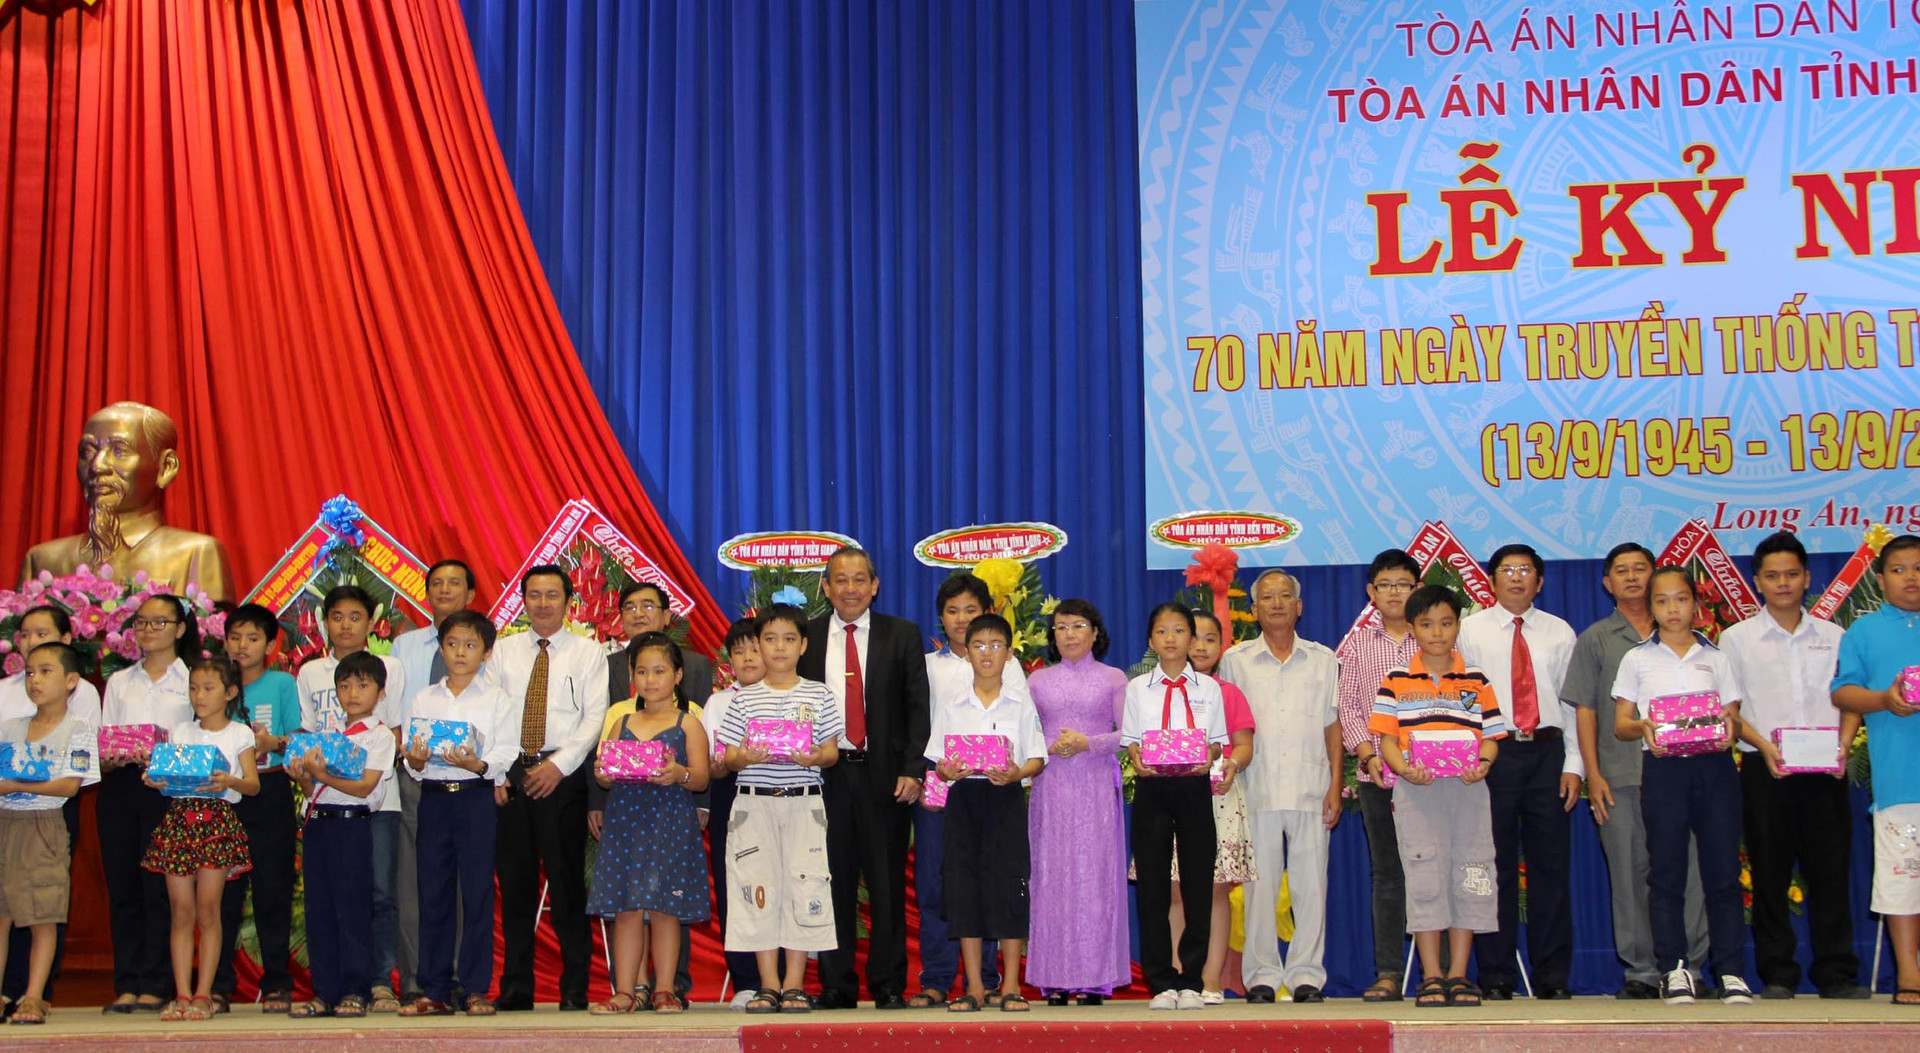 TAND tỉnh Long An tổ chức gặp mặt kỷ niệm 70 năm ngày Truyền thống TAND